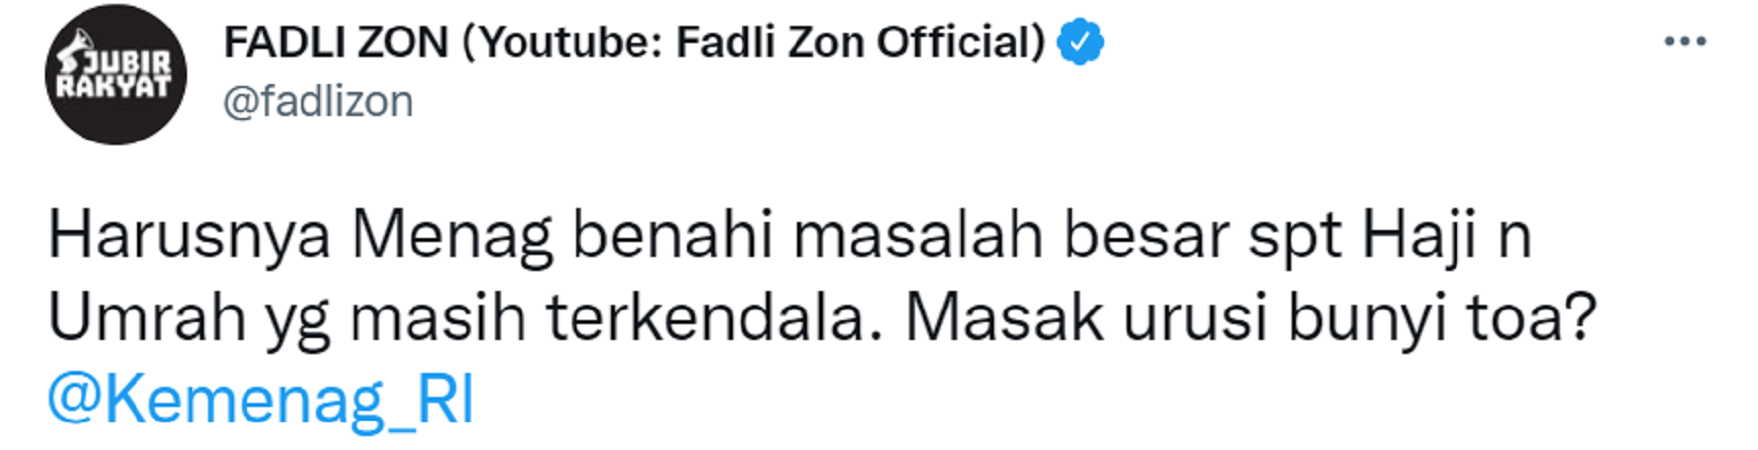 Cuitan Fadli Zon menanggapi aturan baru Kemenag.